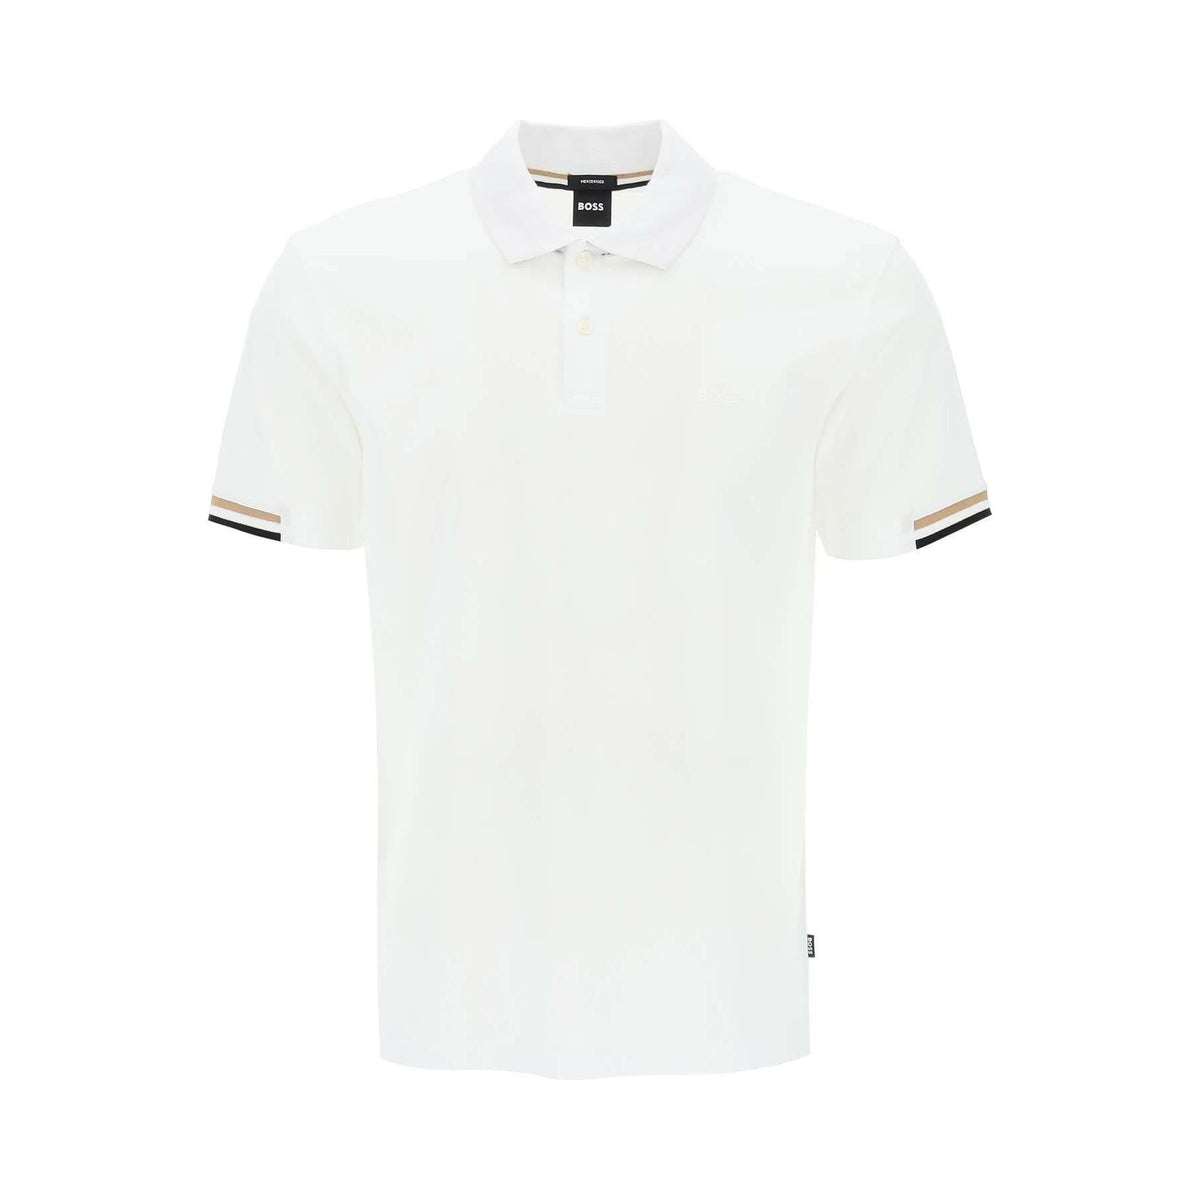 White Parlay Cotton Piqué Polo Shirt BOSS JOHN JULIA.